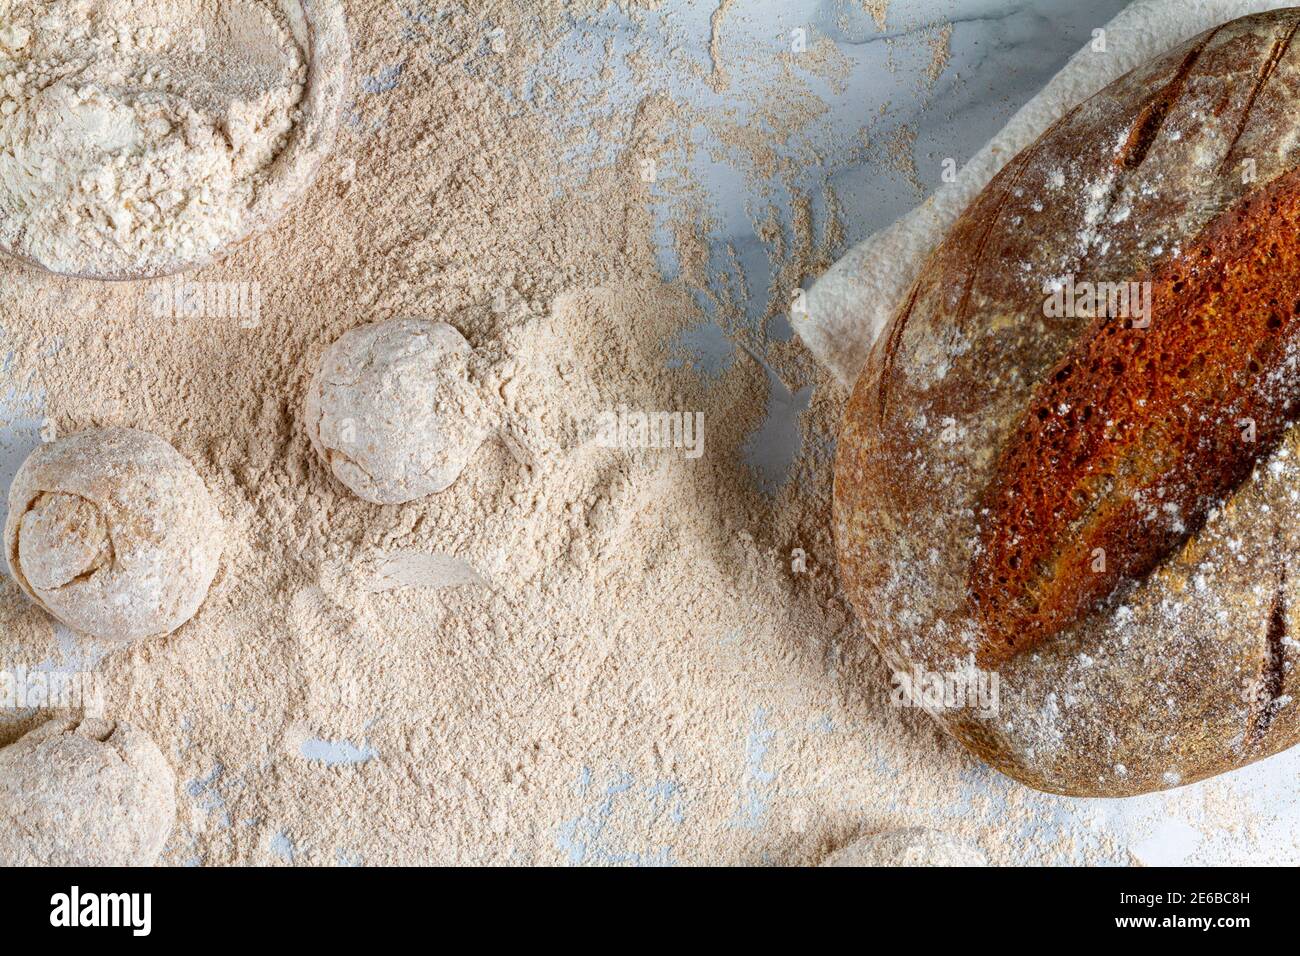 Flaches Bild von einem hausgemachten Sauerteig Brot Laib Kühlung Auf der Serviette auf der Marmorplatte, wo andere Hand gerundet Teig sitzen in Mehl mit Ad Stockfoto